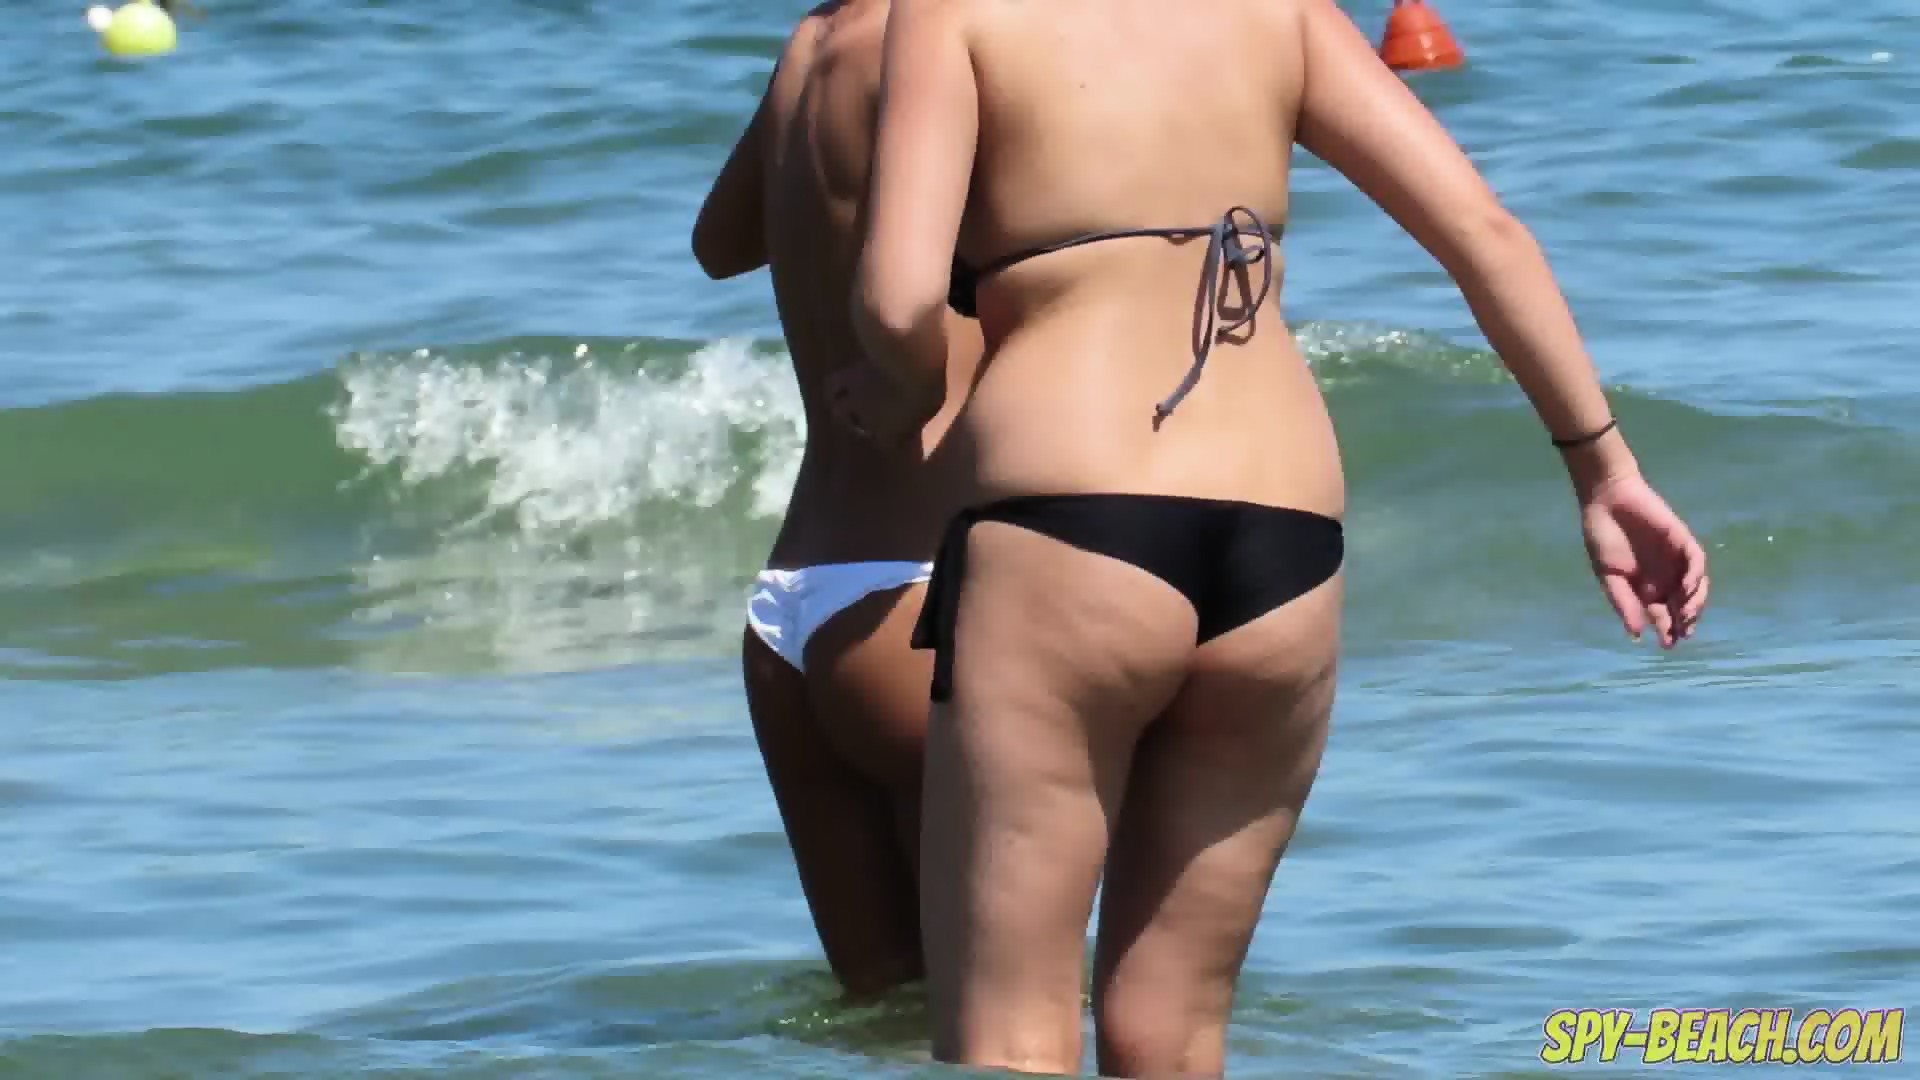 california bikini beach voyeur Sex Pics Hd